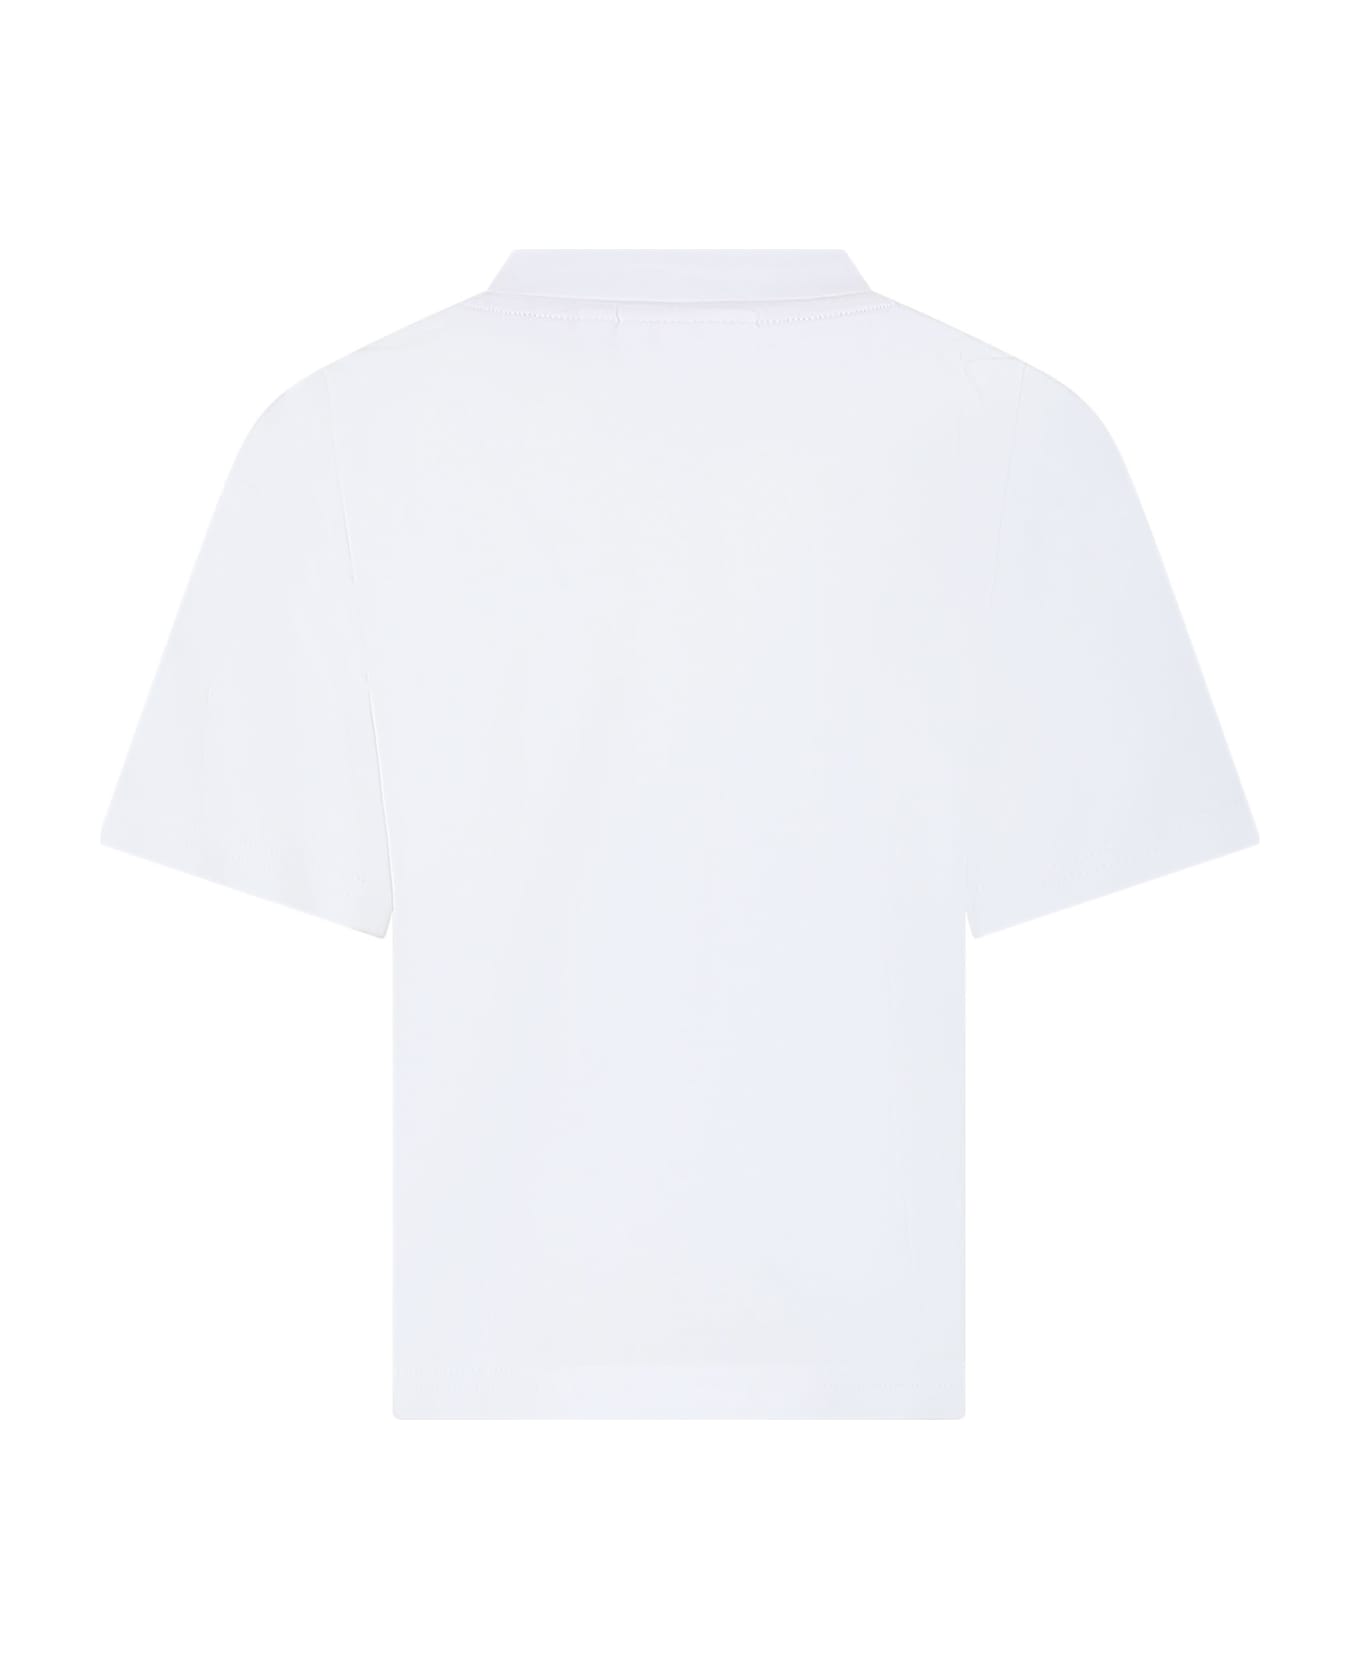 Hugo Boss White T-shirt For Boy With Logo - White